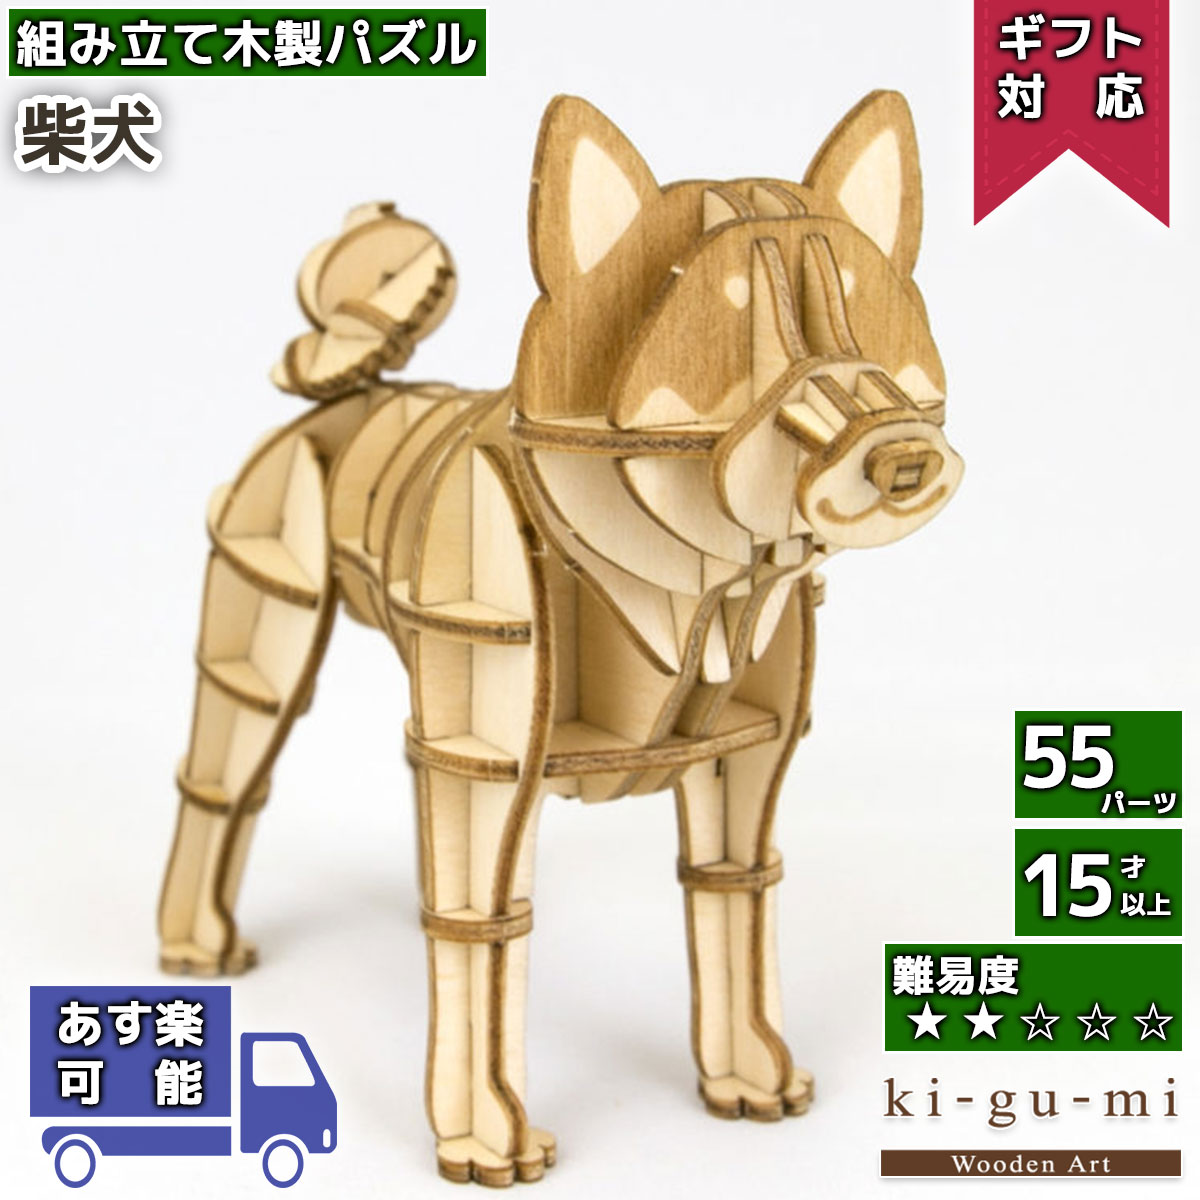 【母の日シール無料】工作キット 柴犬 kigumi エーゾーン ウッドパズル 立体パズル 木製 大人 手作り 自由研究 キット 工作 母の日